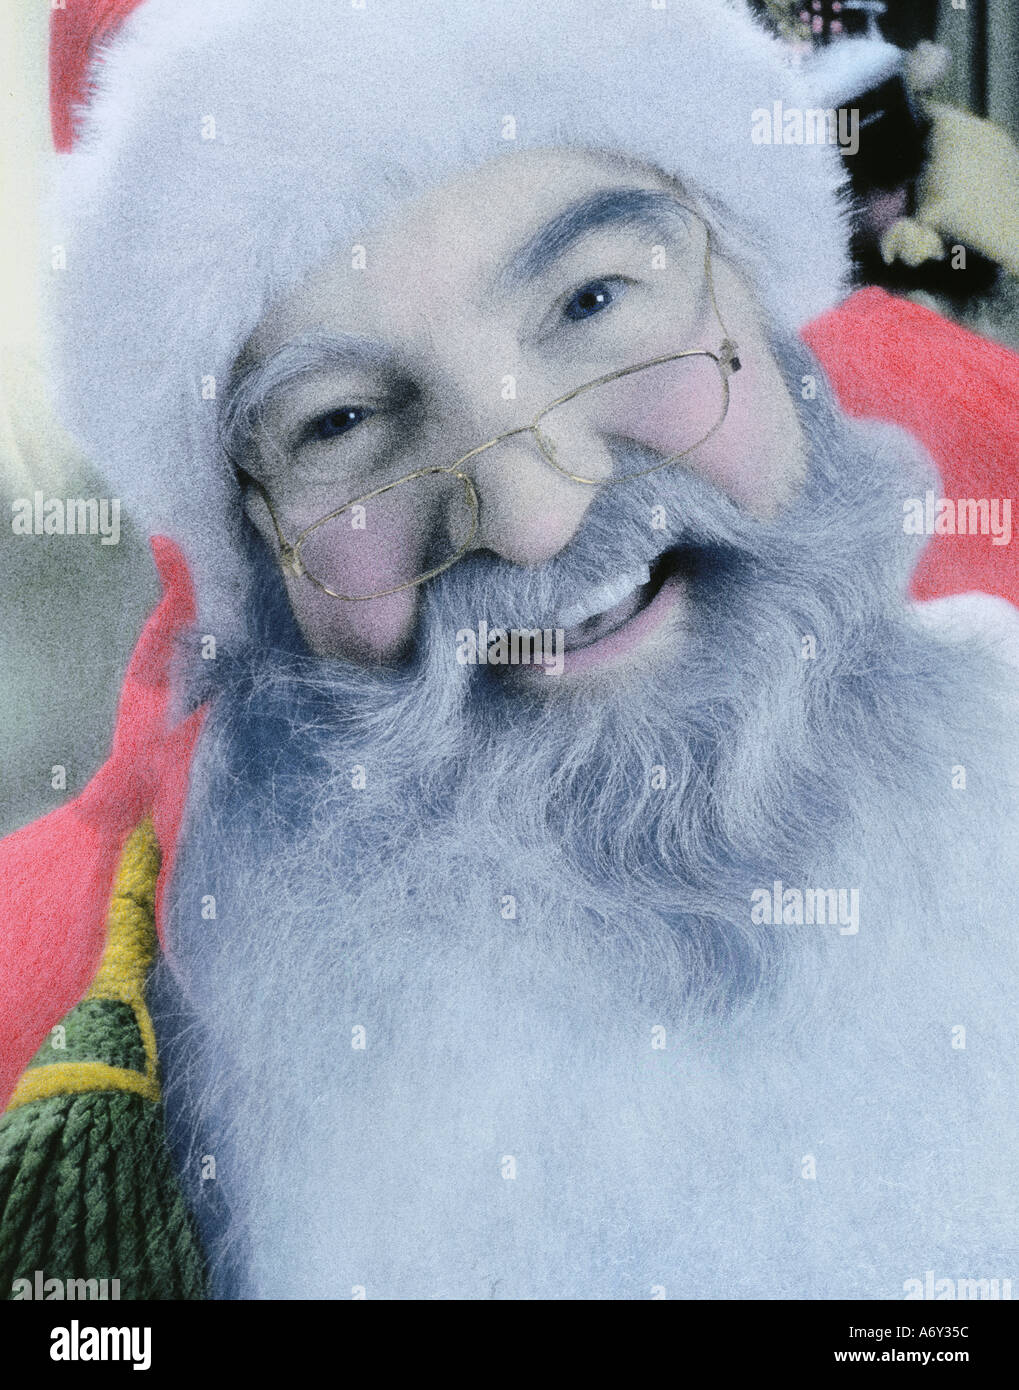 Mano immagine colorata di Santa Claus ritratto pellicola a raggi infrarossi Foto Stock